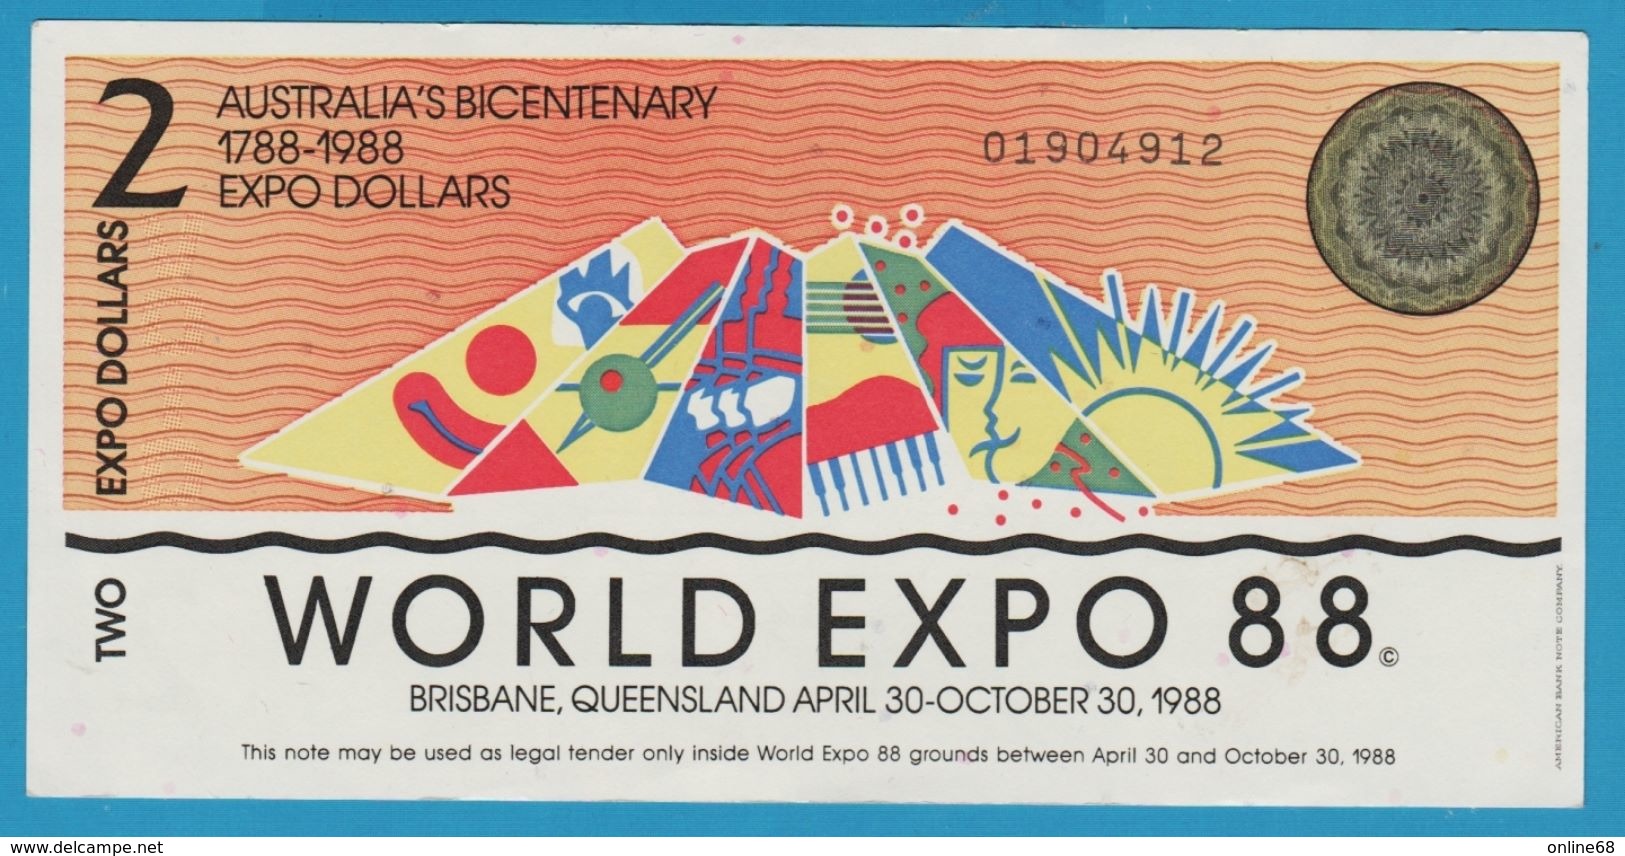 AUSTRALIA 2 EXPO DOLLARS 1788-1988 WORLD EXPO 88 No 01904912 - Ficticios & Especimenes